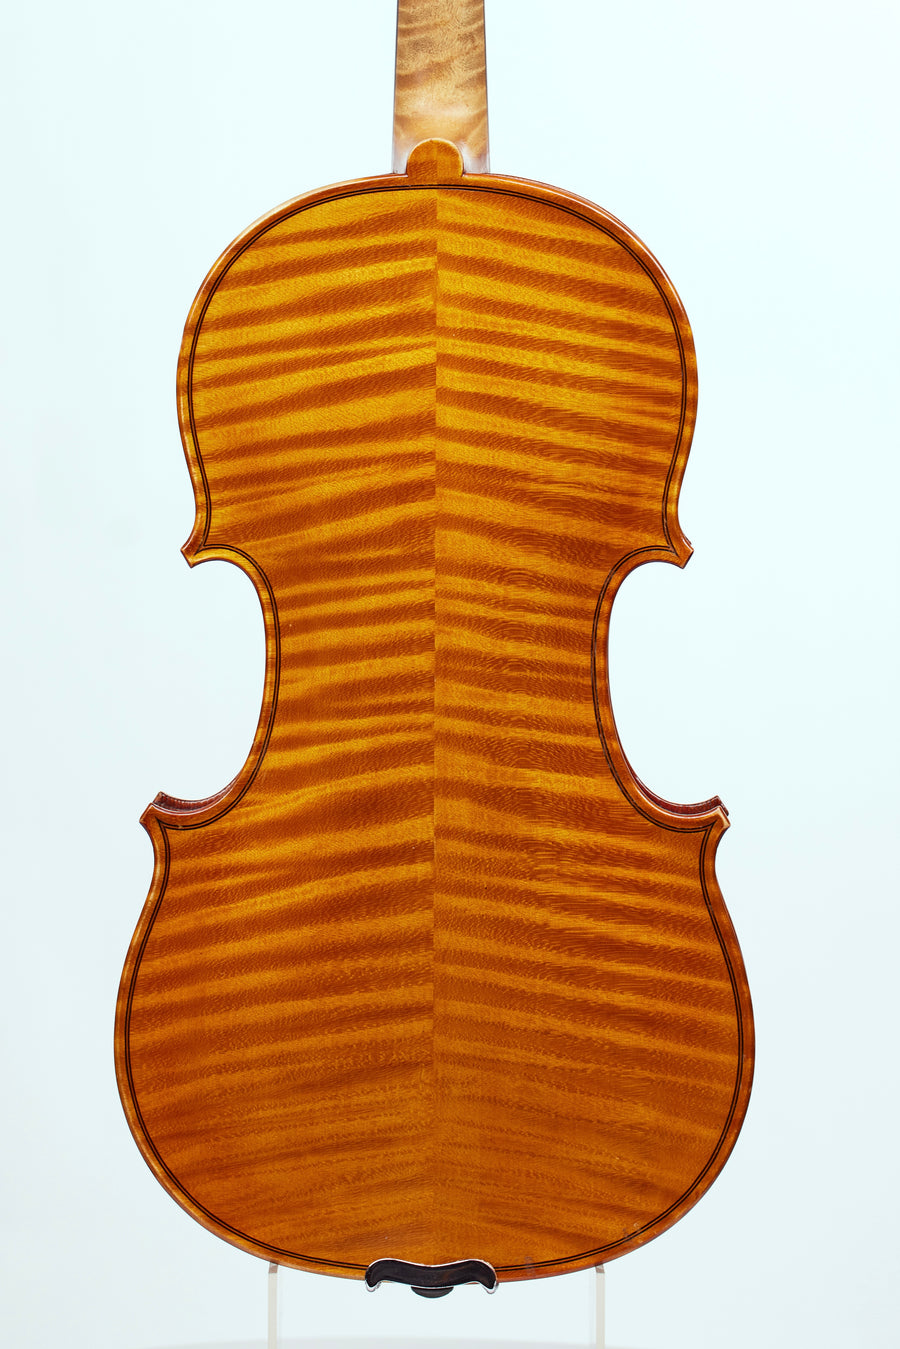 A Fine French Violin From Collin Mezin Pere for Hawkes & Son, 1896.